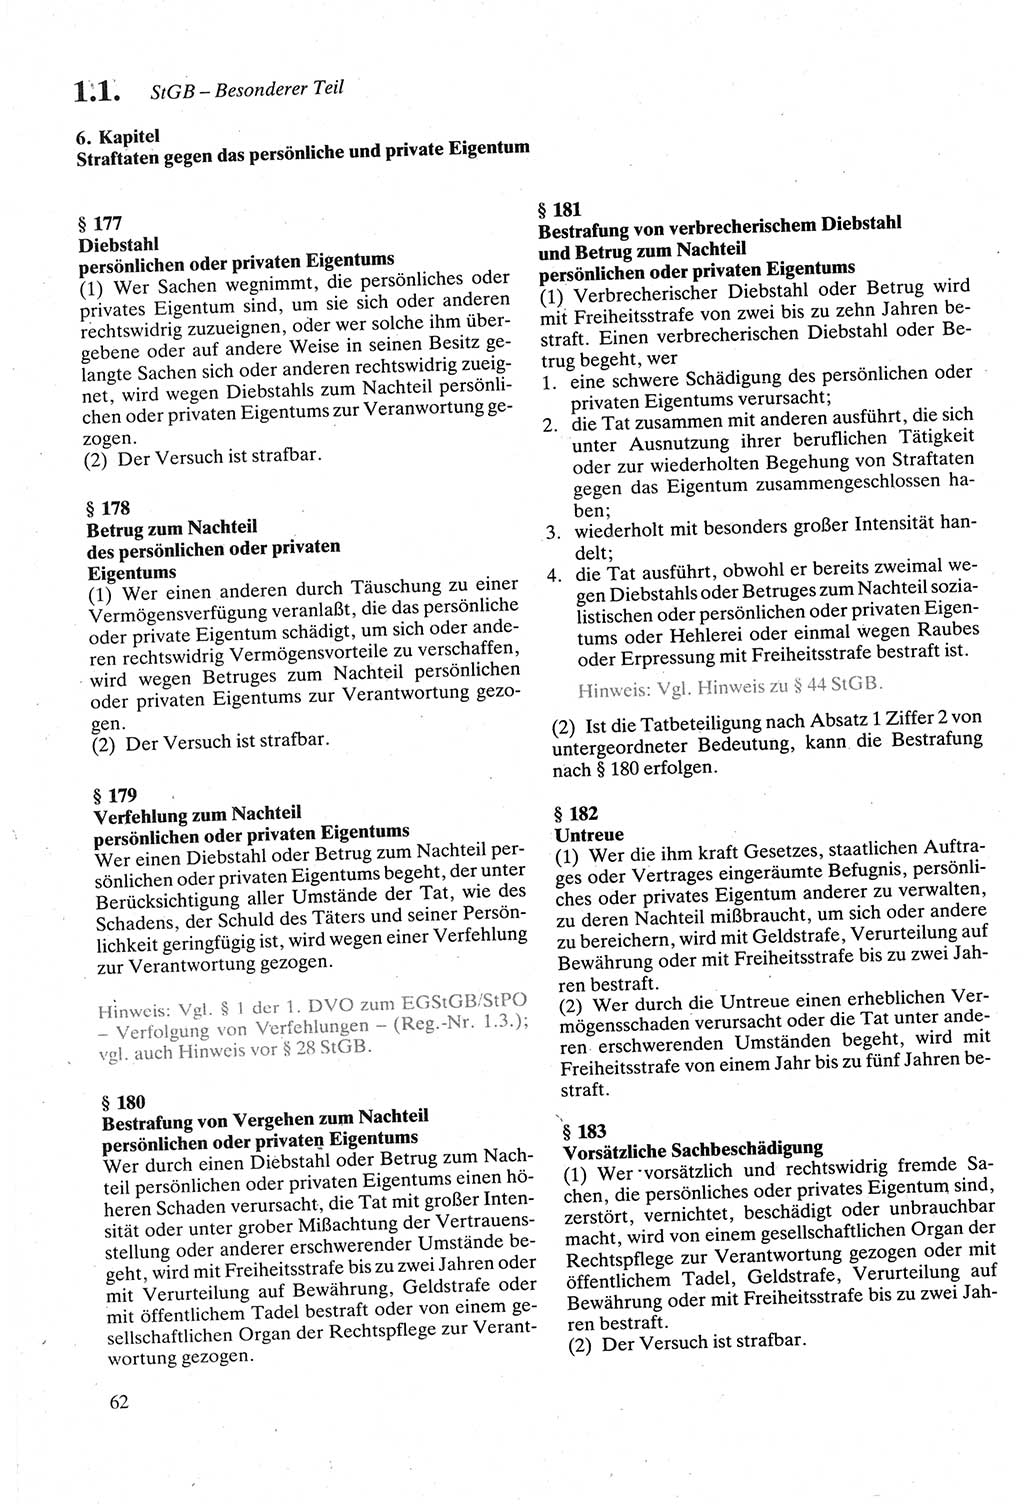 Strafgesetzbuch (StGB) der Deutschen Demokratischen Republik (DDR) sowie angrenzende Gesetze und Bestimmungen 1979, Seite 62 (StGB DDR Ges. Best. 1979, S. 62)